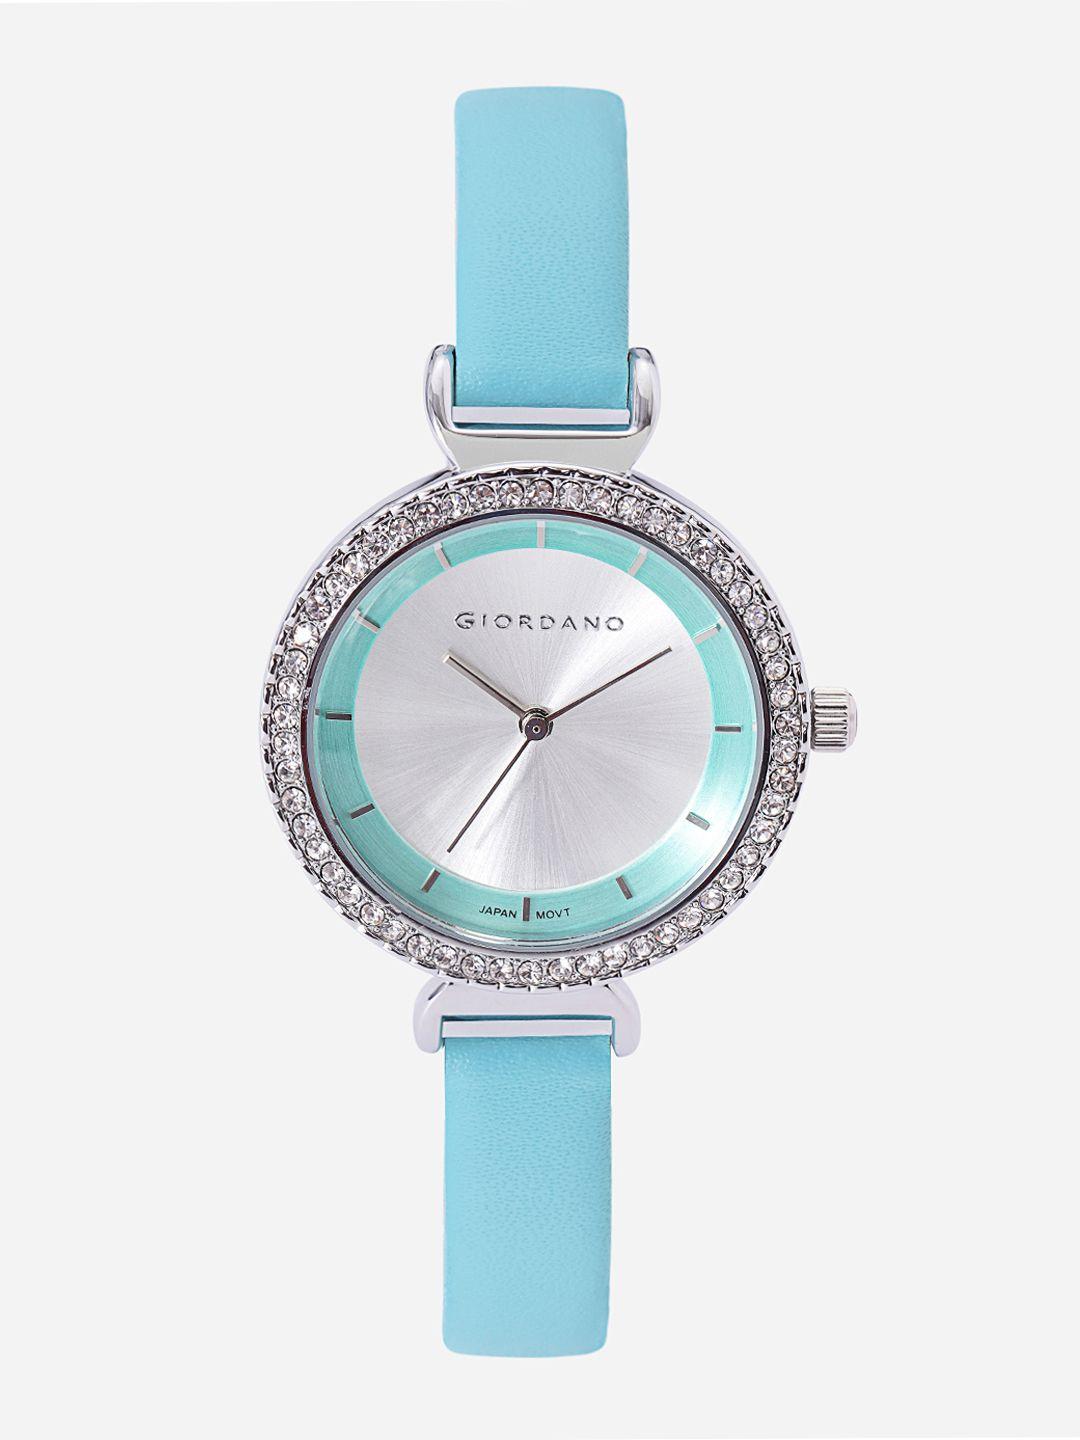 giordano-women-silver-toned-analogue-watch